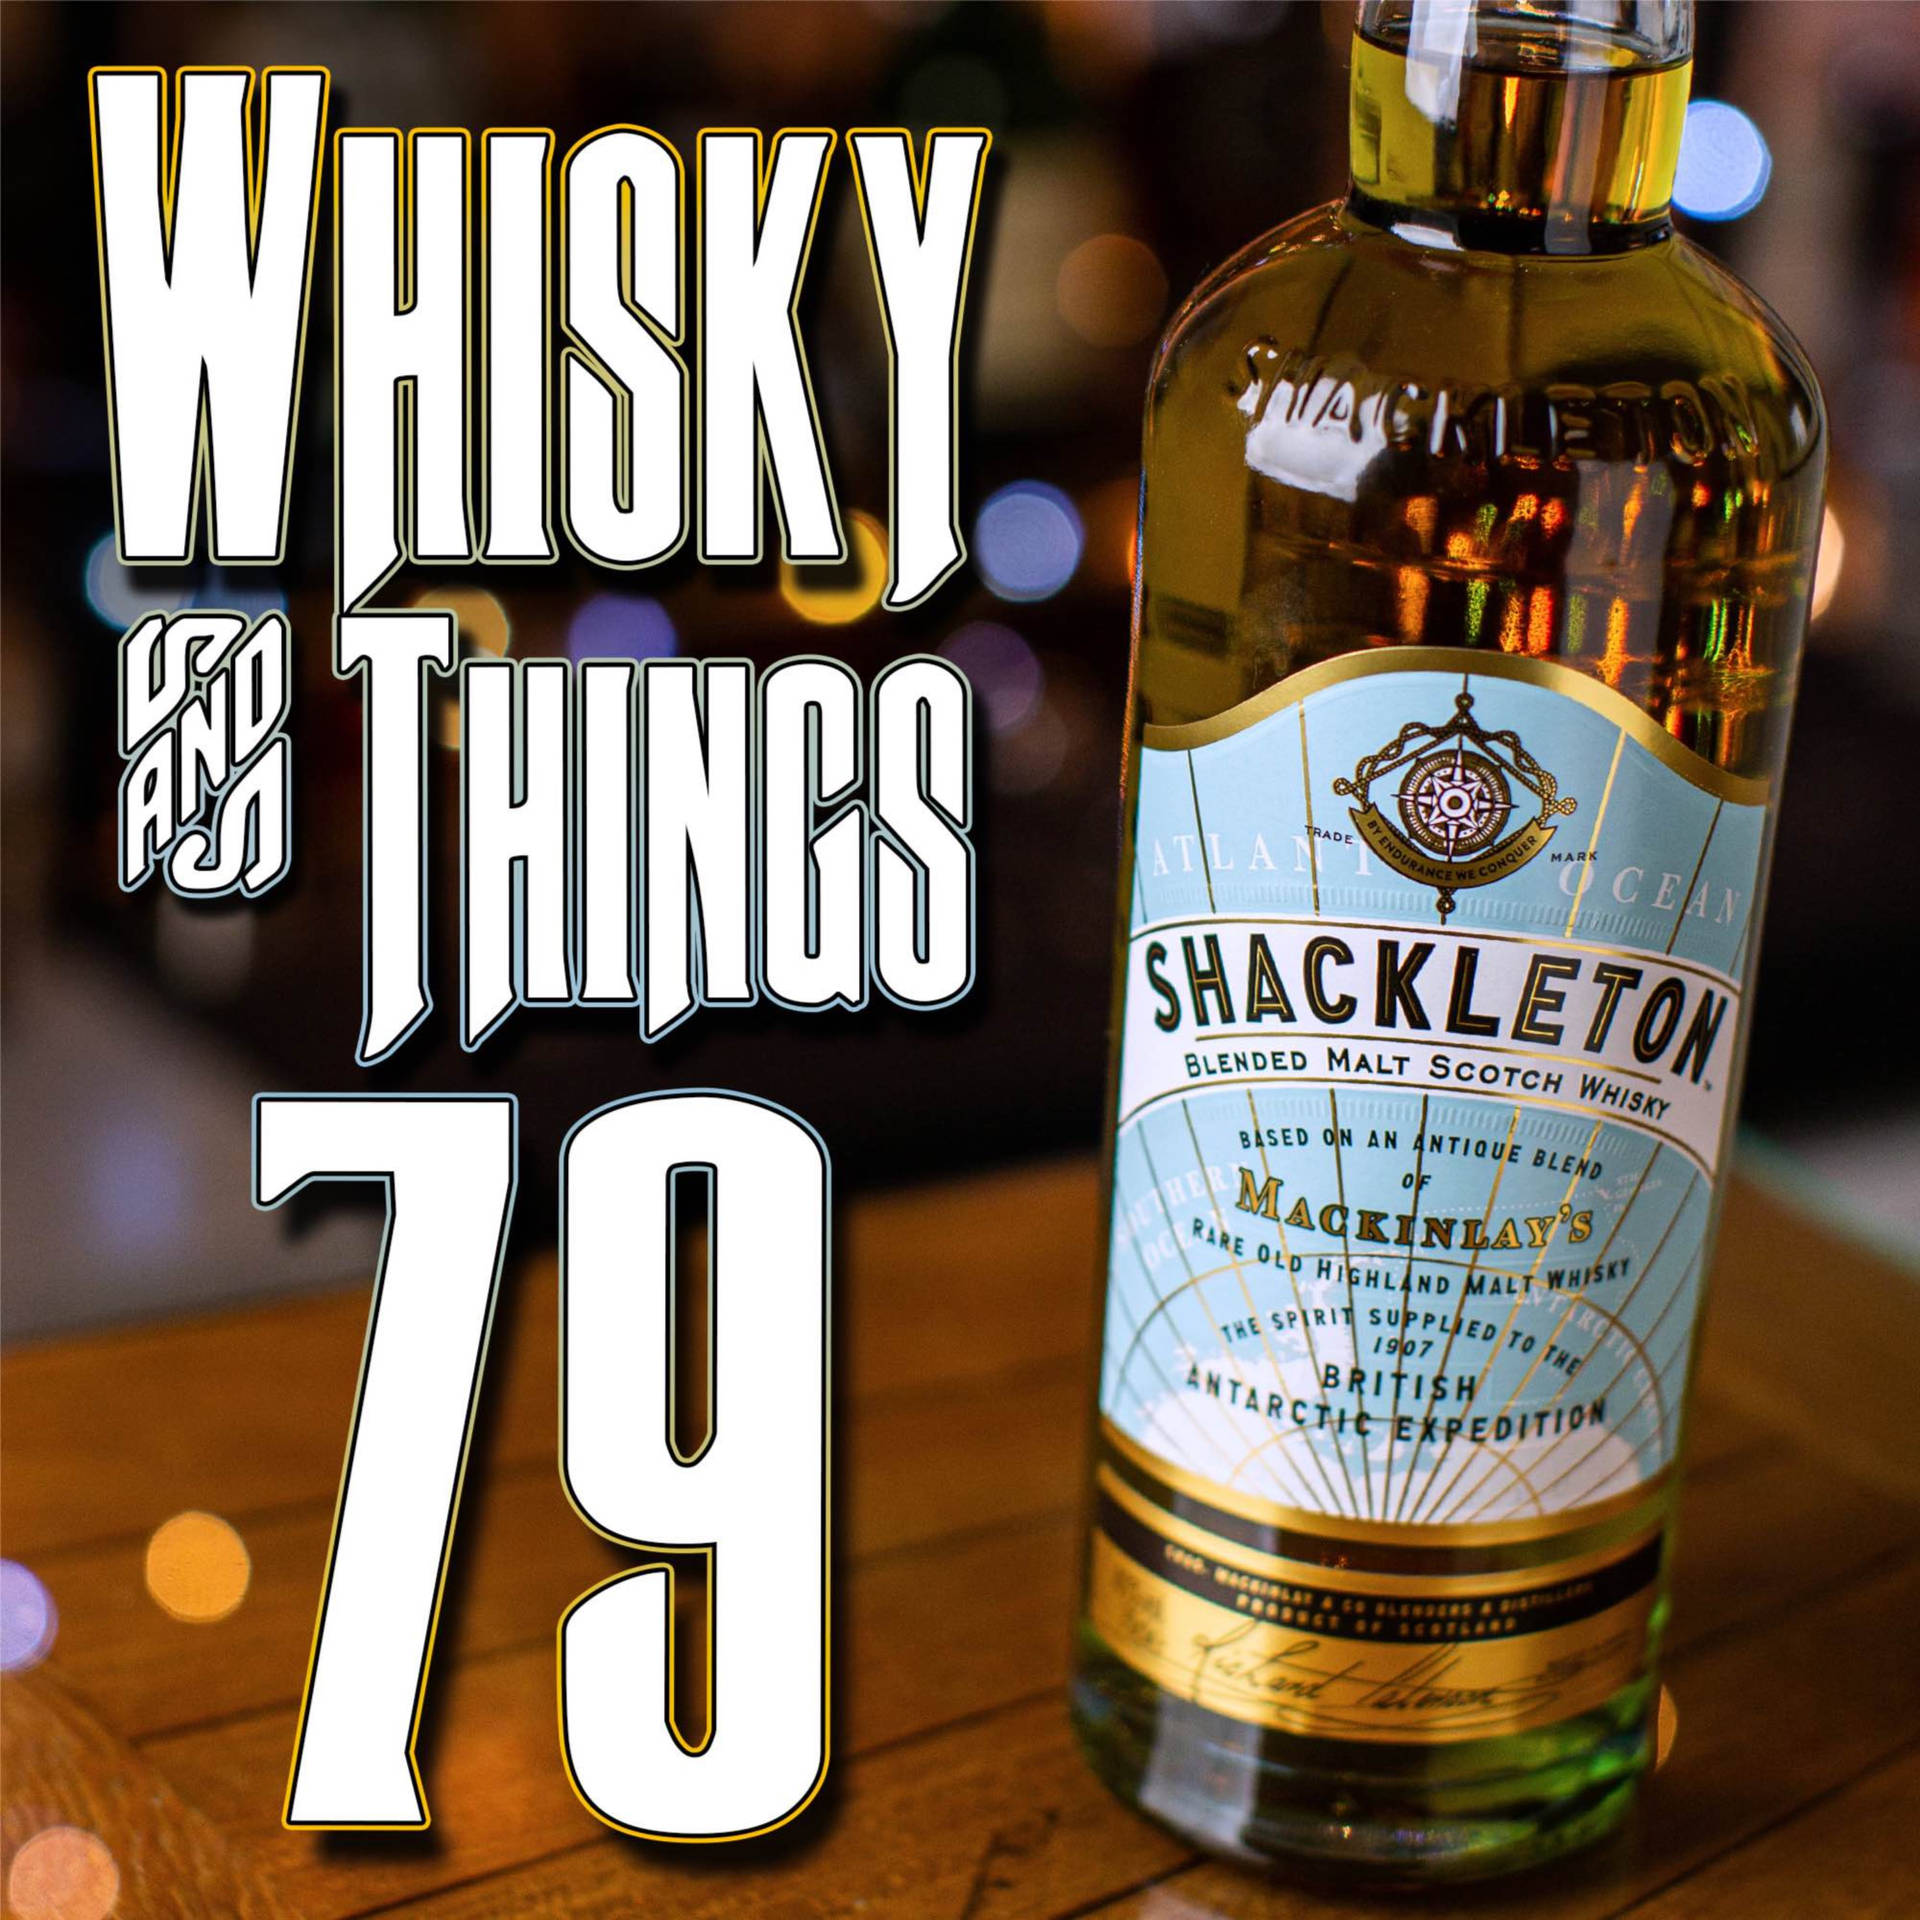 Shackletonscotch Whisky Och 79 Saker. Wallpaper